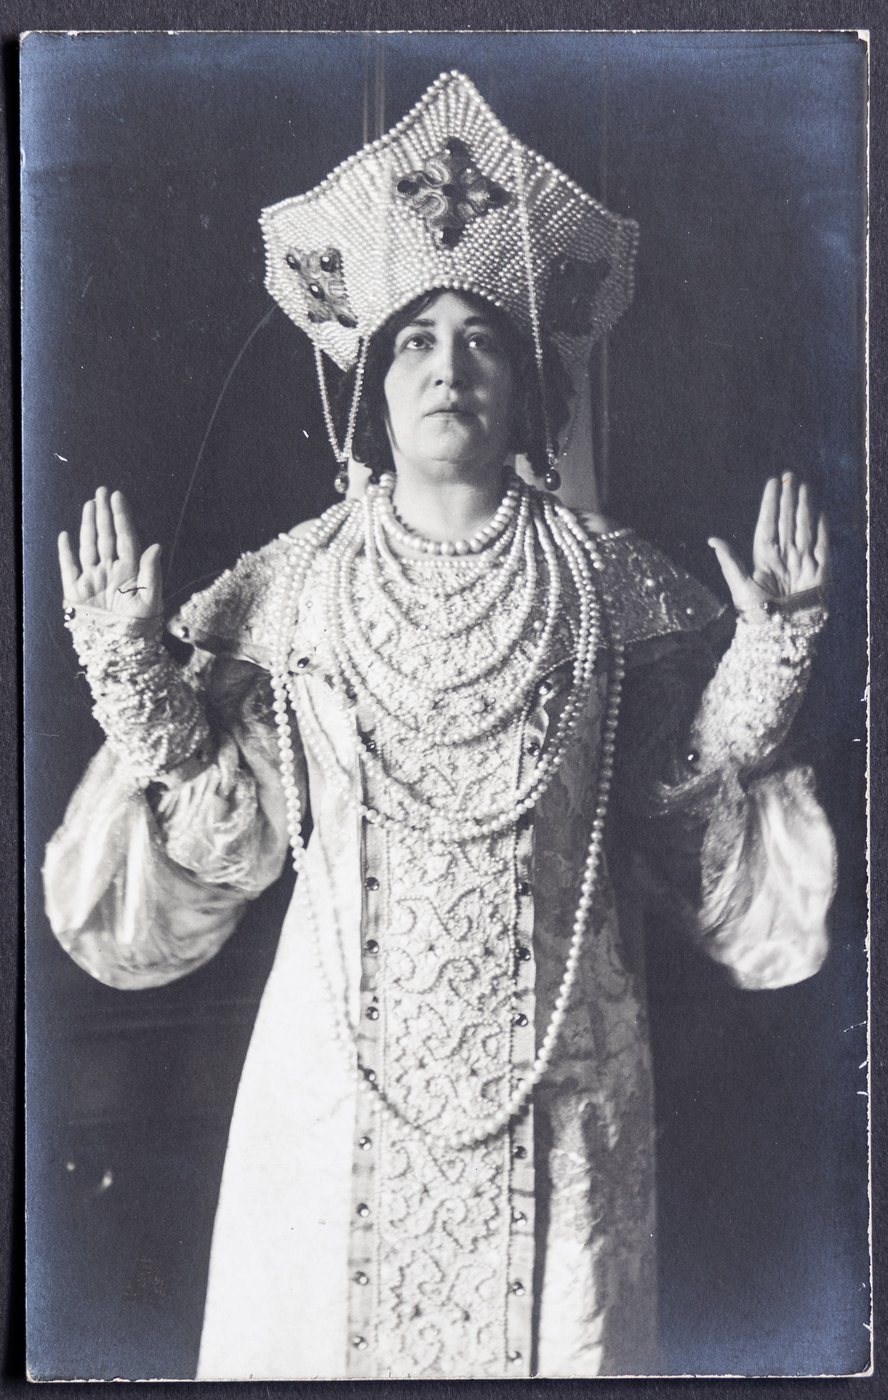 schwarz-weiß Foto einer Frau in historischem Gewand mit kronenförmiger Kopfbedeckung, die Arme mit flachen Händen abgewinkelt gehoben